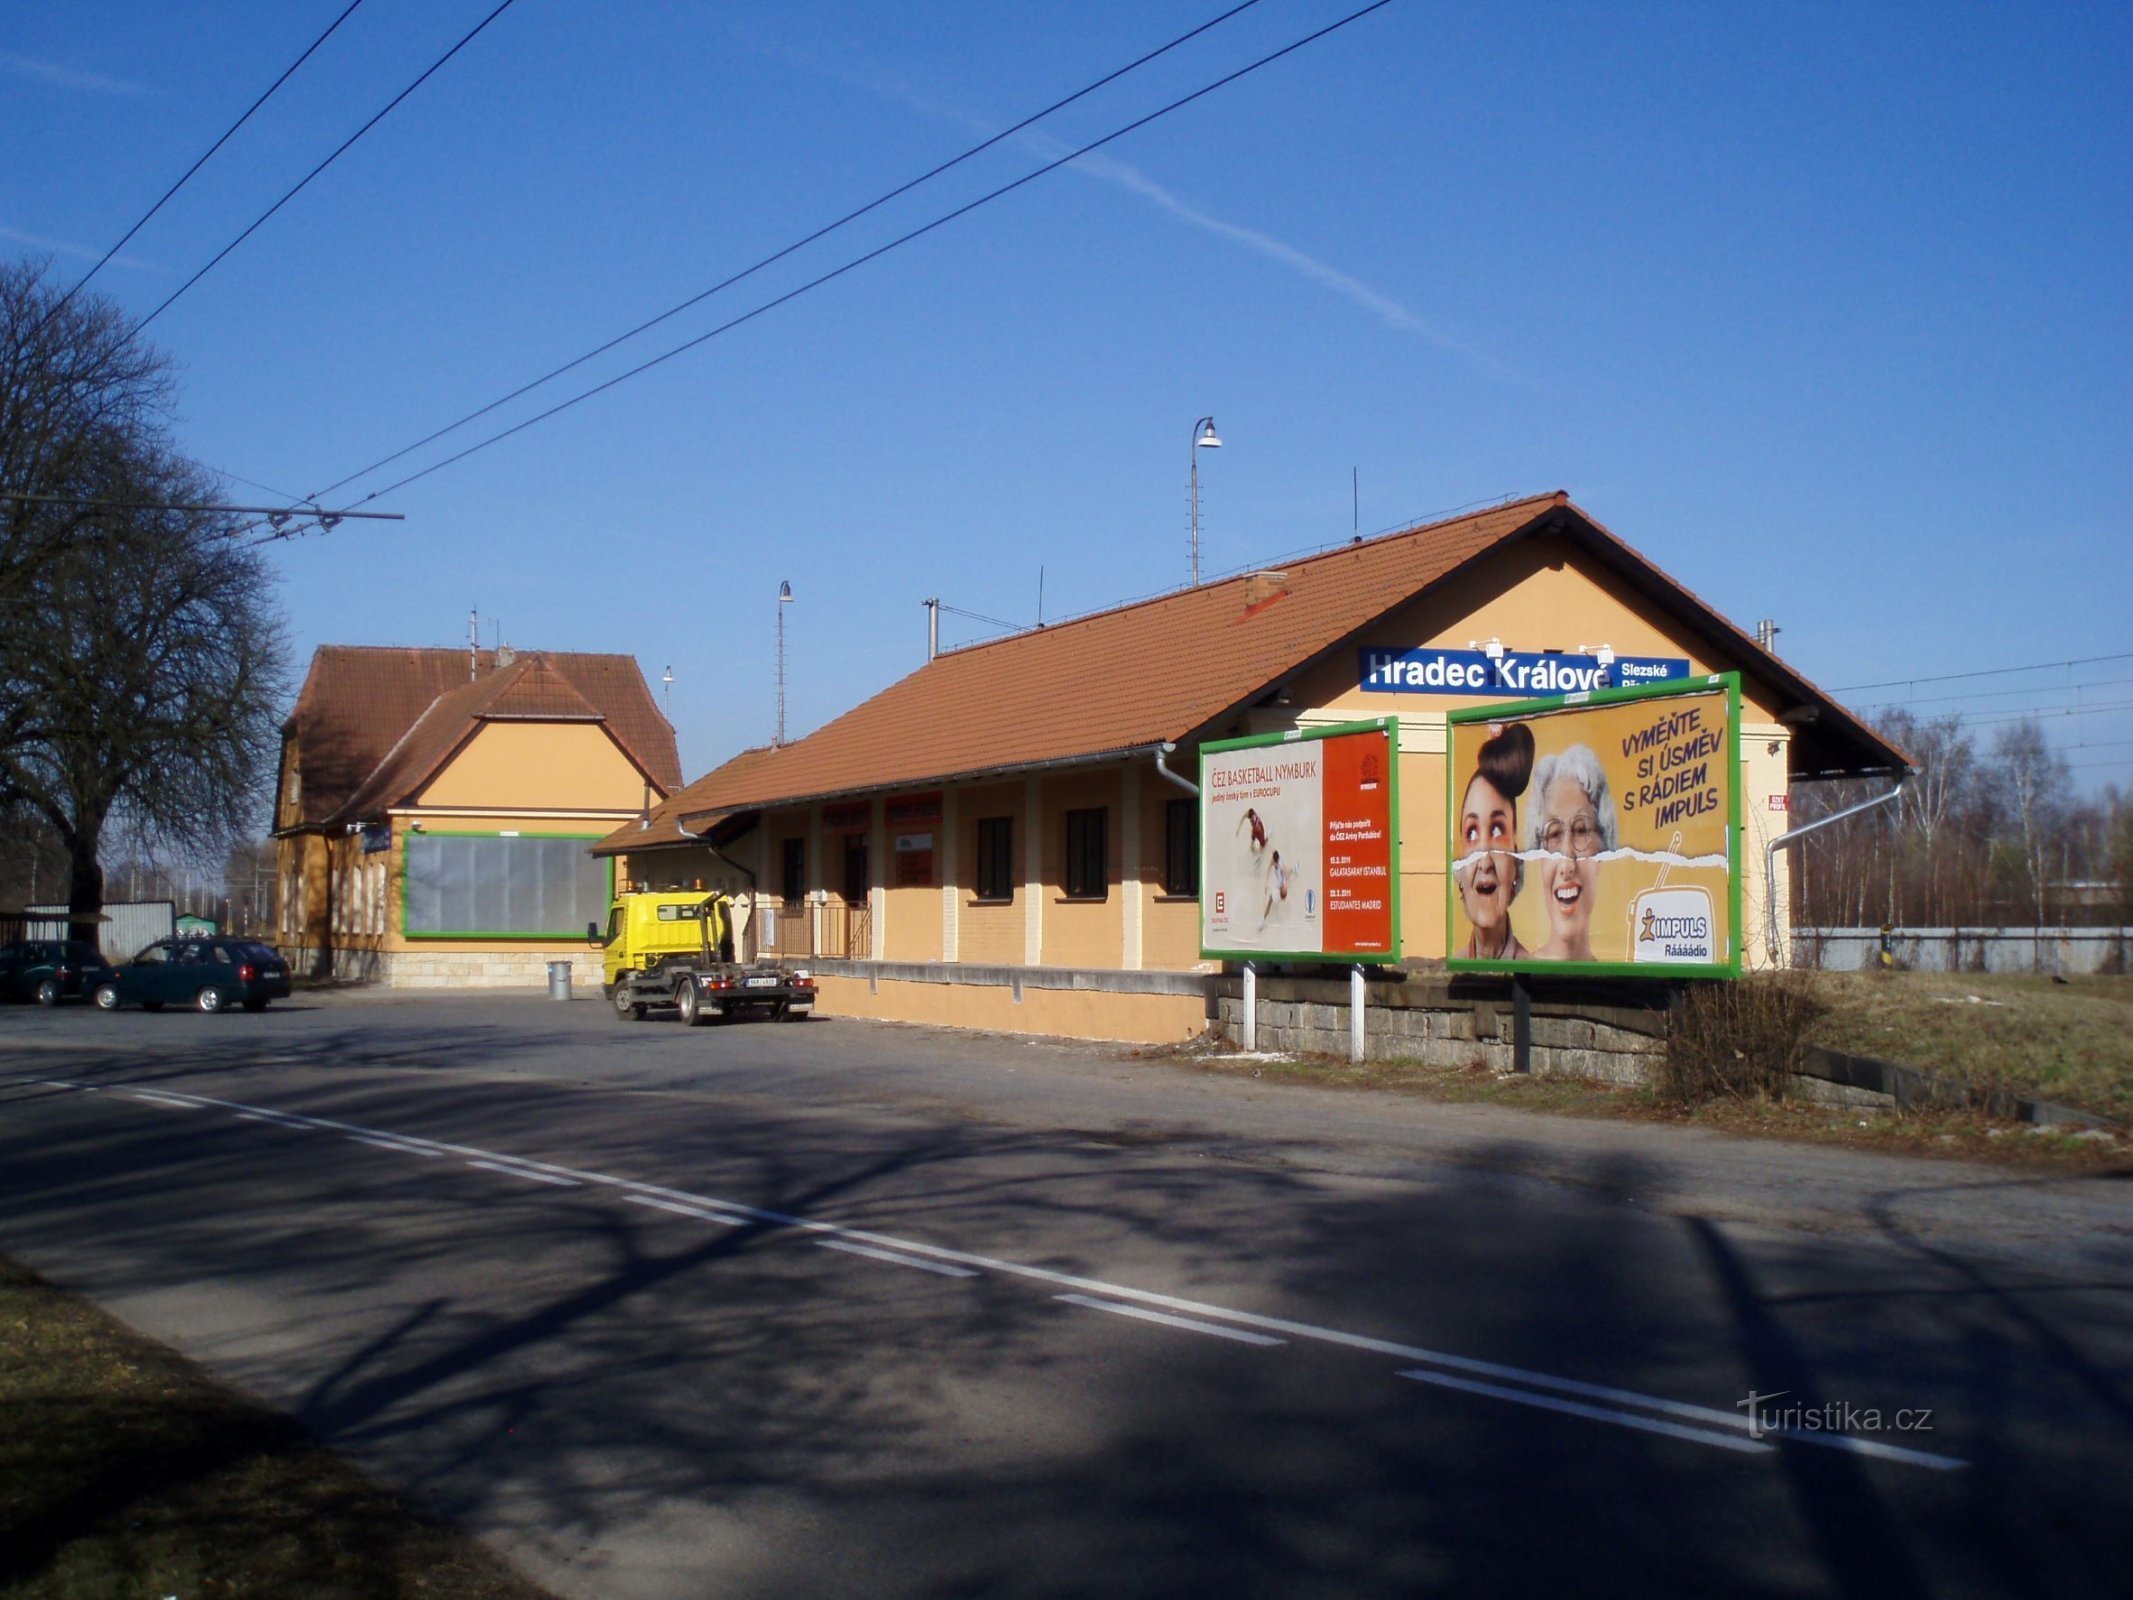 Железнодорожный вокзал в Силезском предместье (Градец Кралове, 24.3.2011)